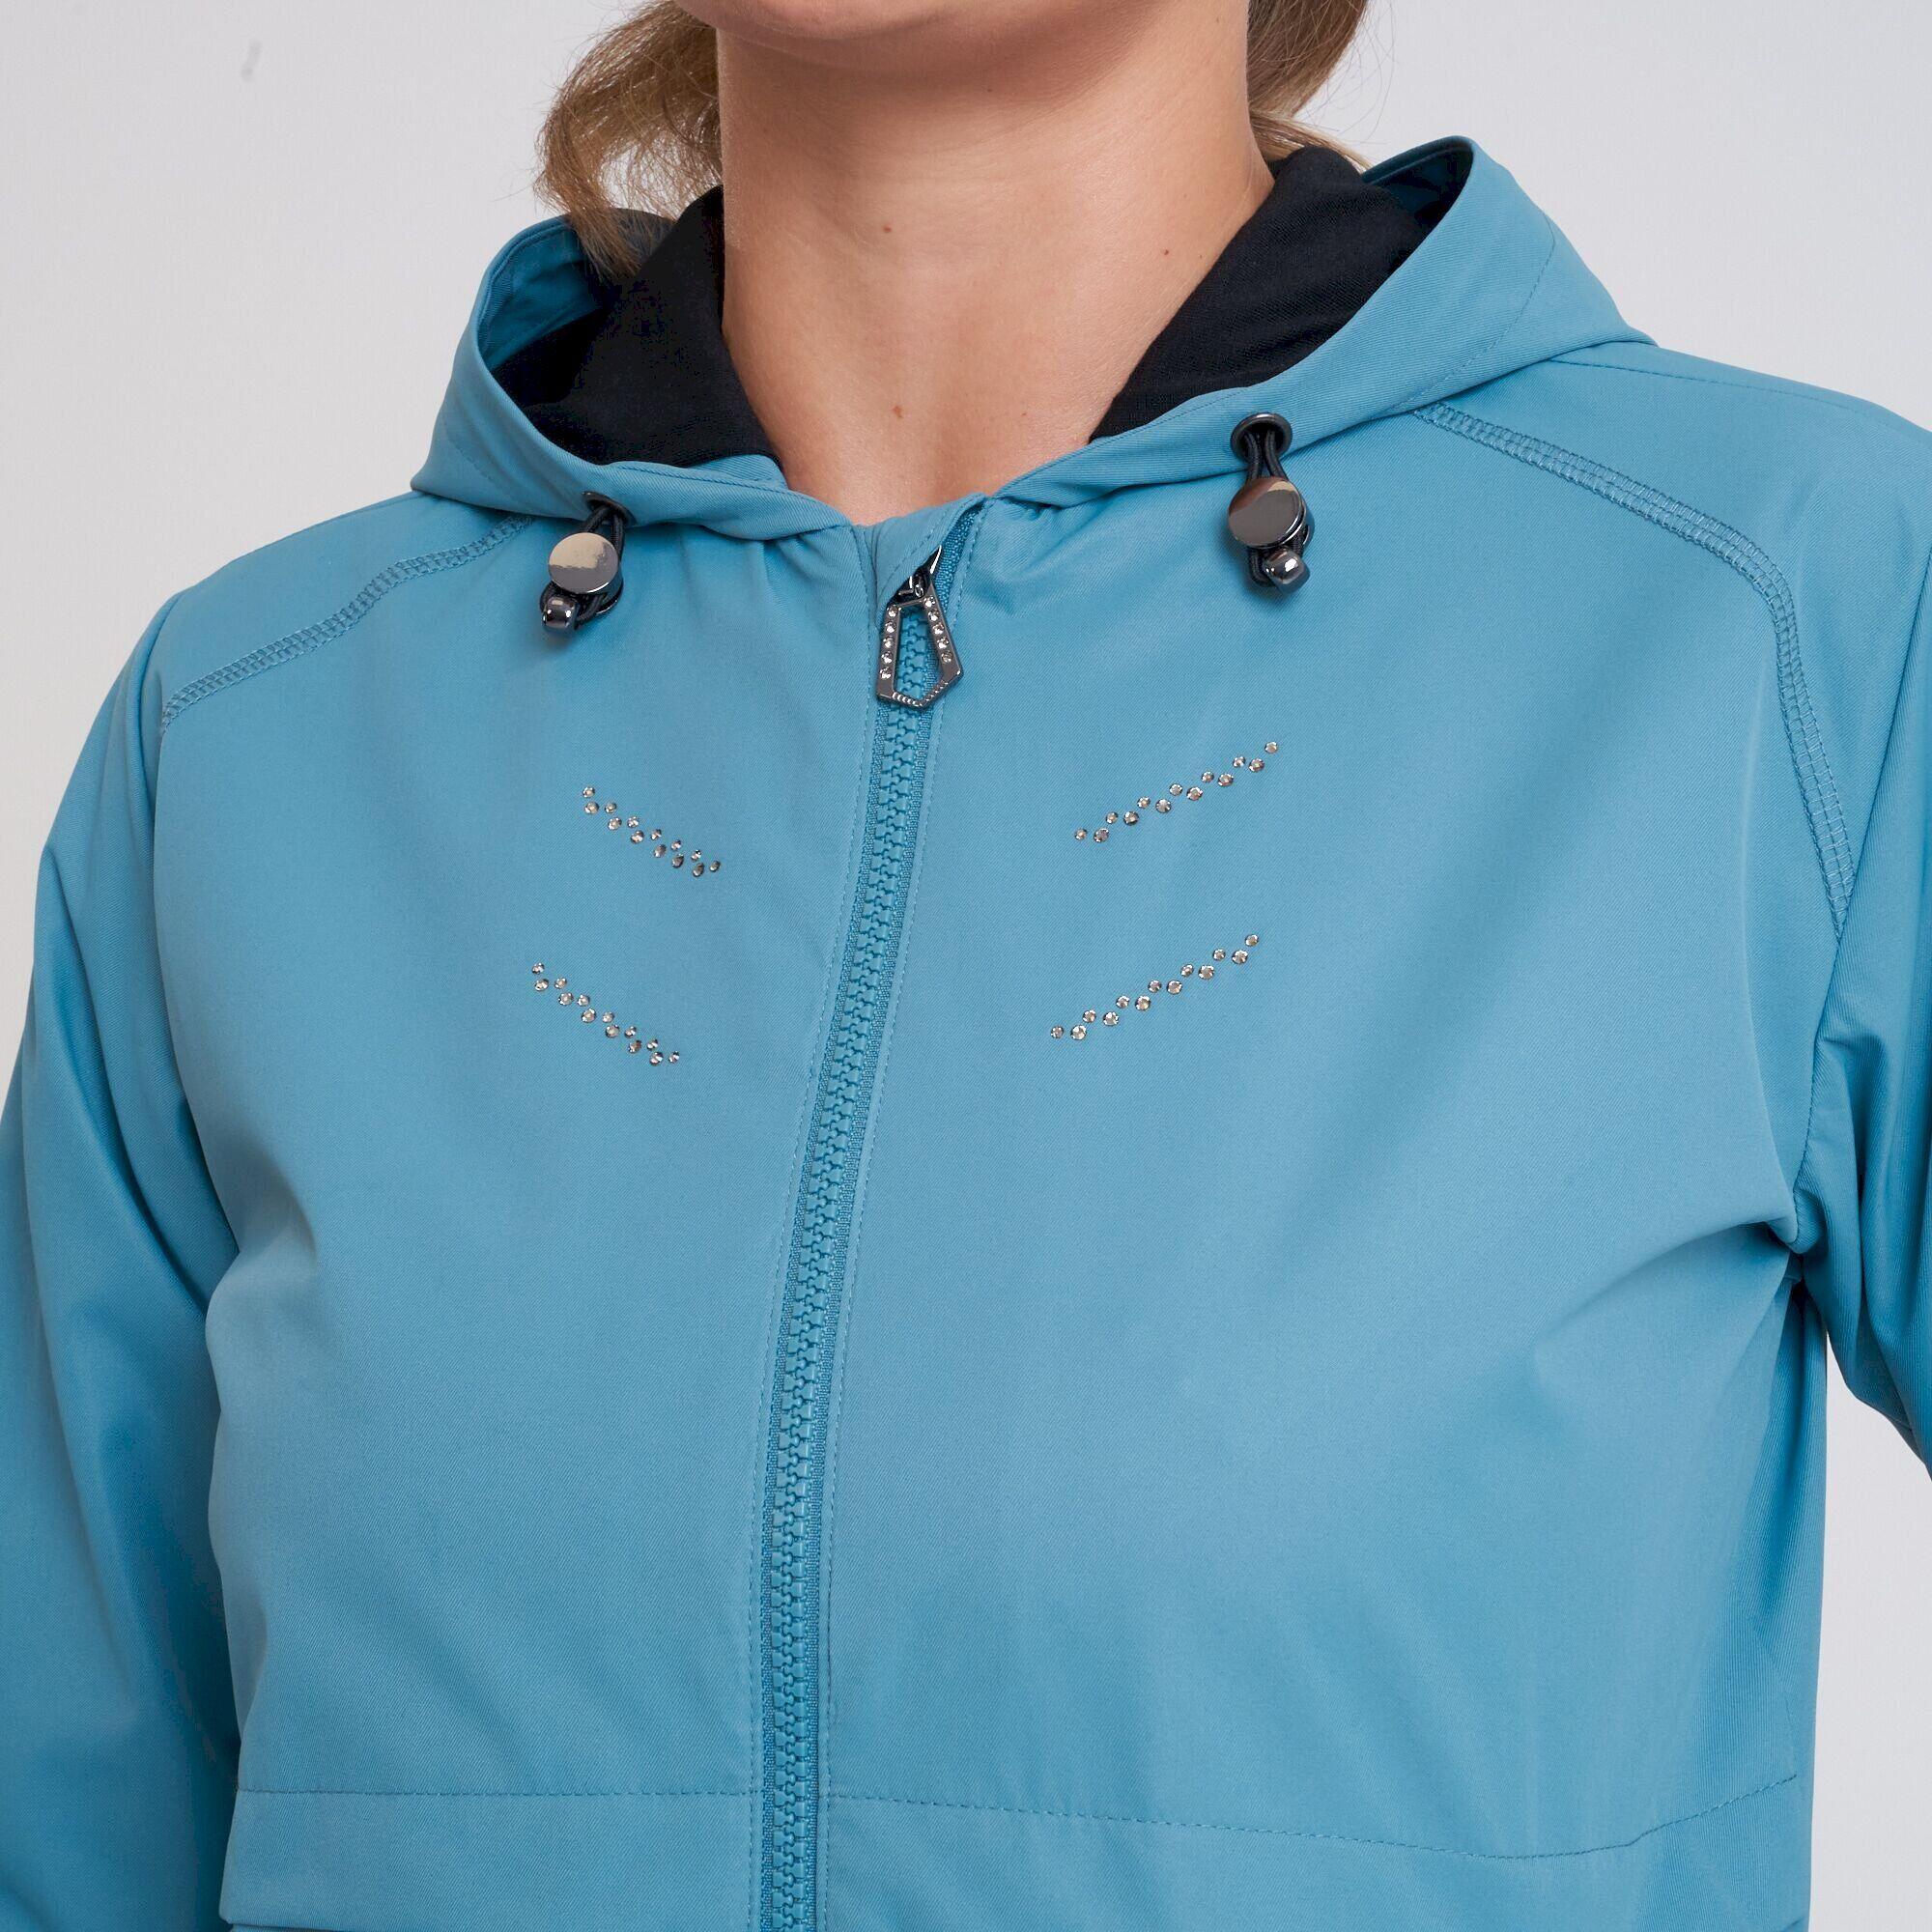 Womens/Ladies Crystallize Waterproof Jacket (Bluestone) 4/5